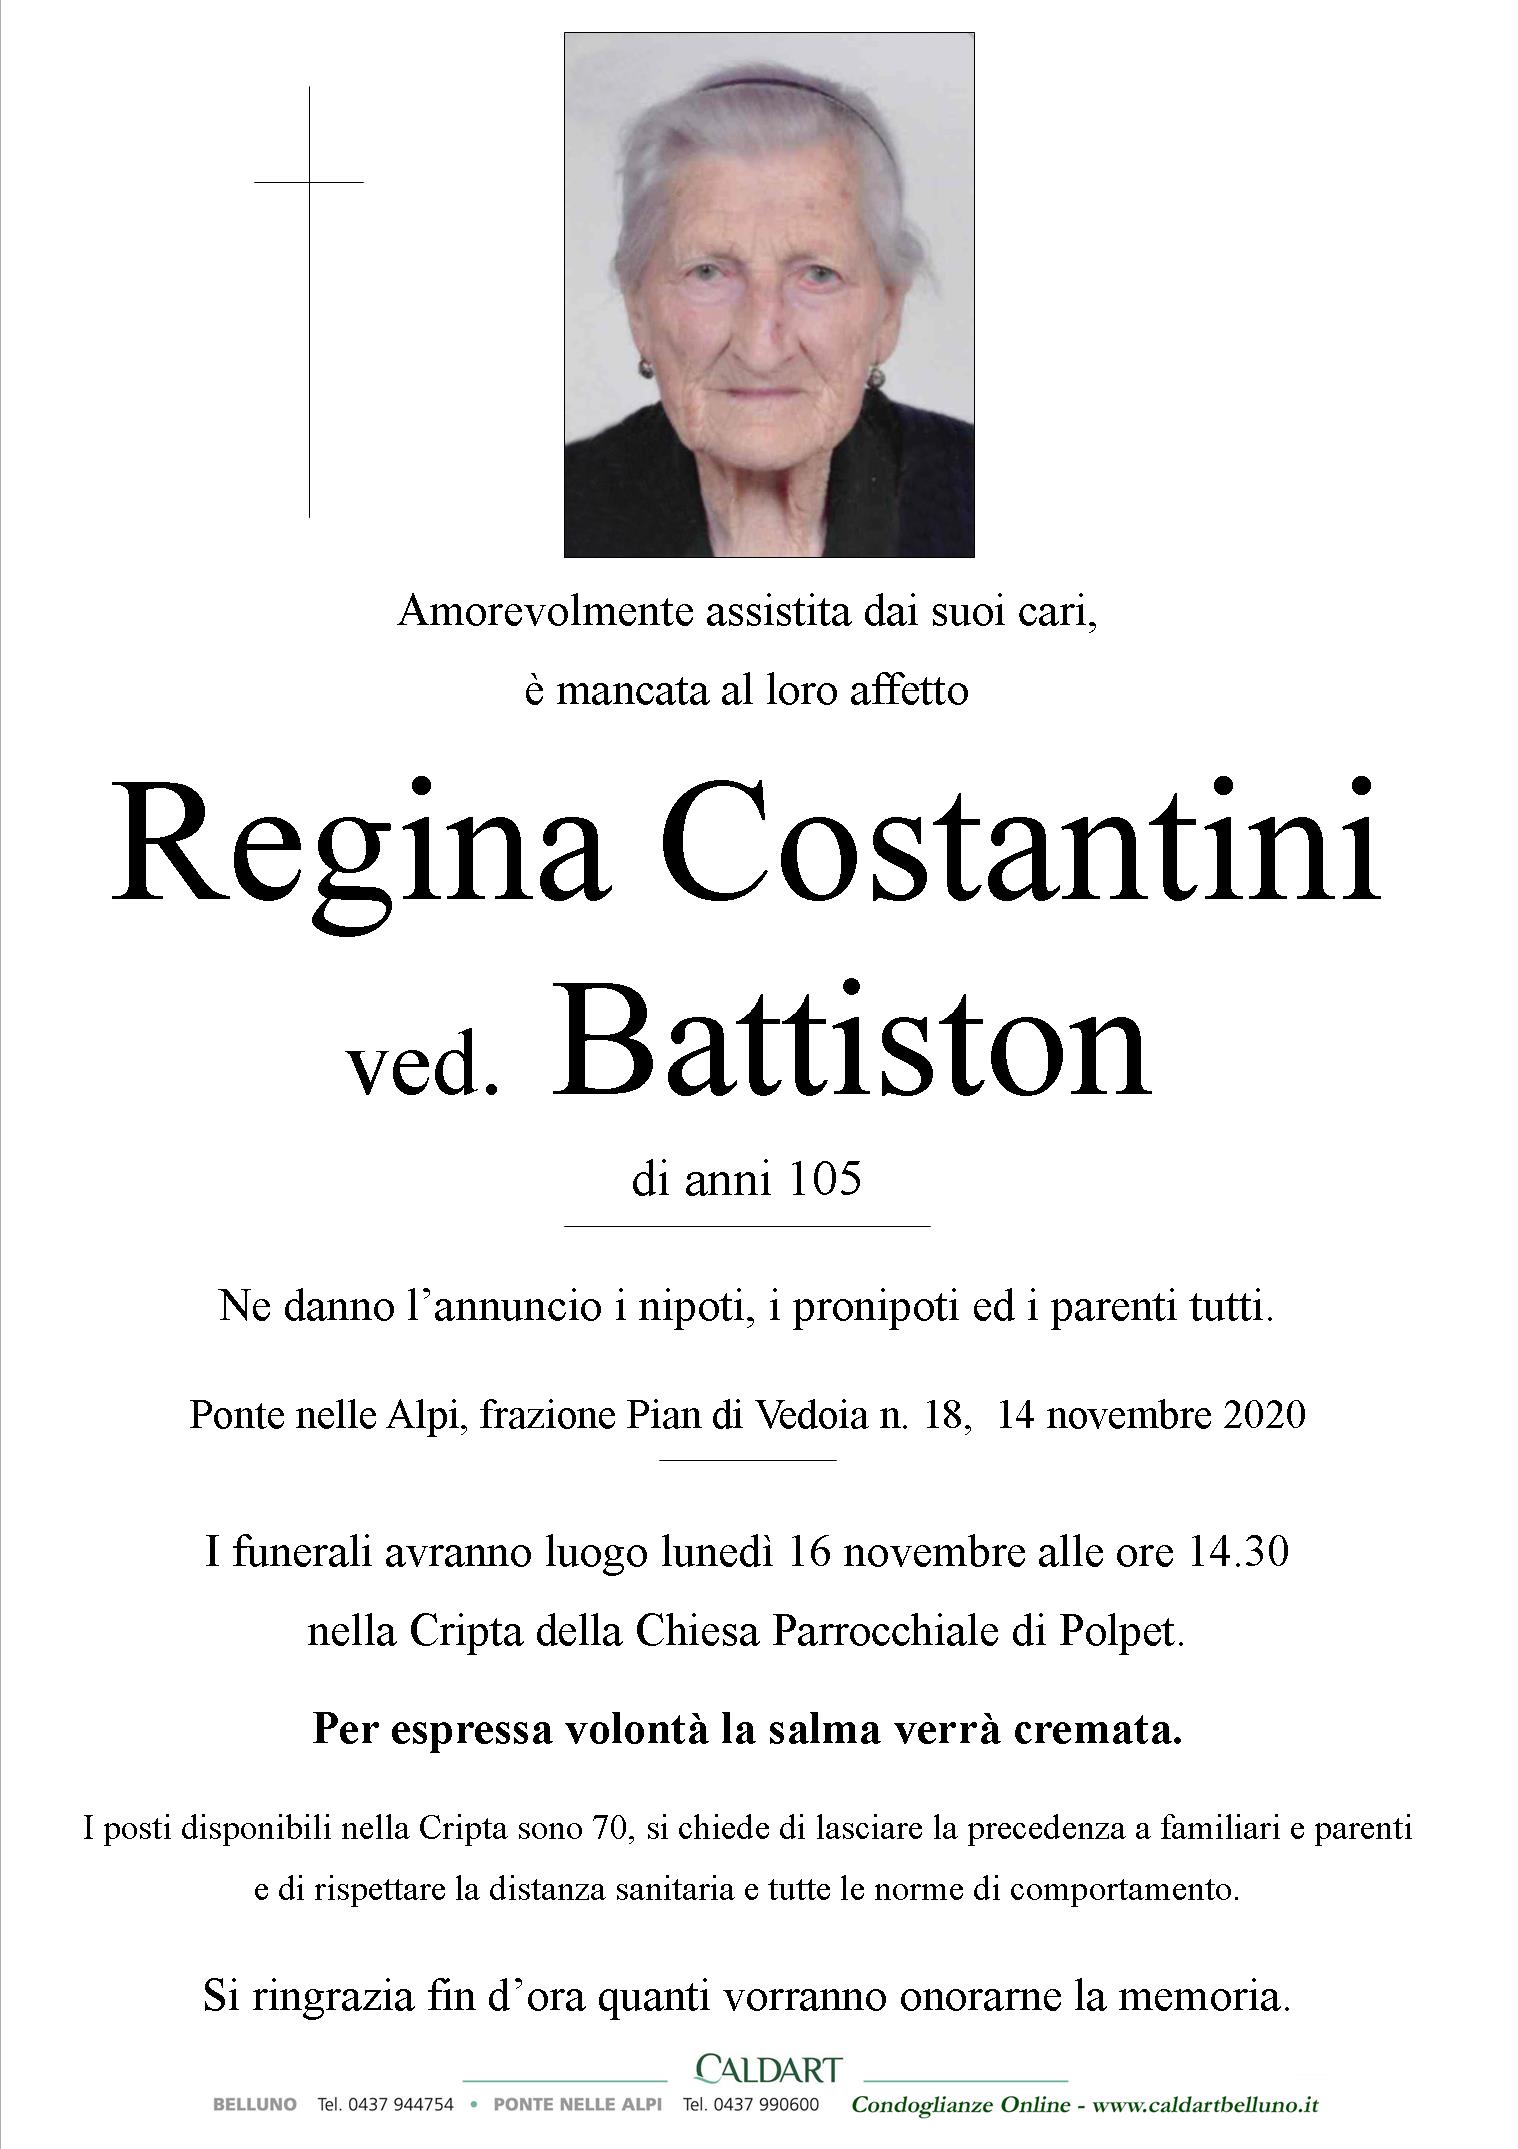 Costantini Regina